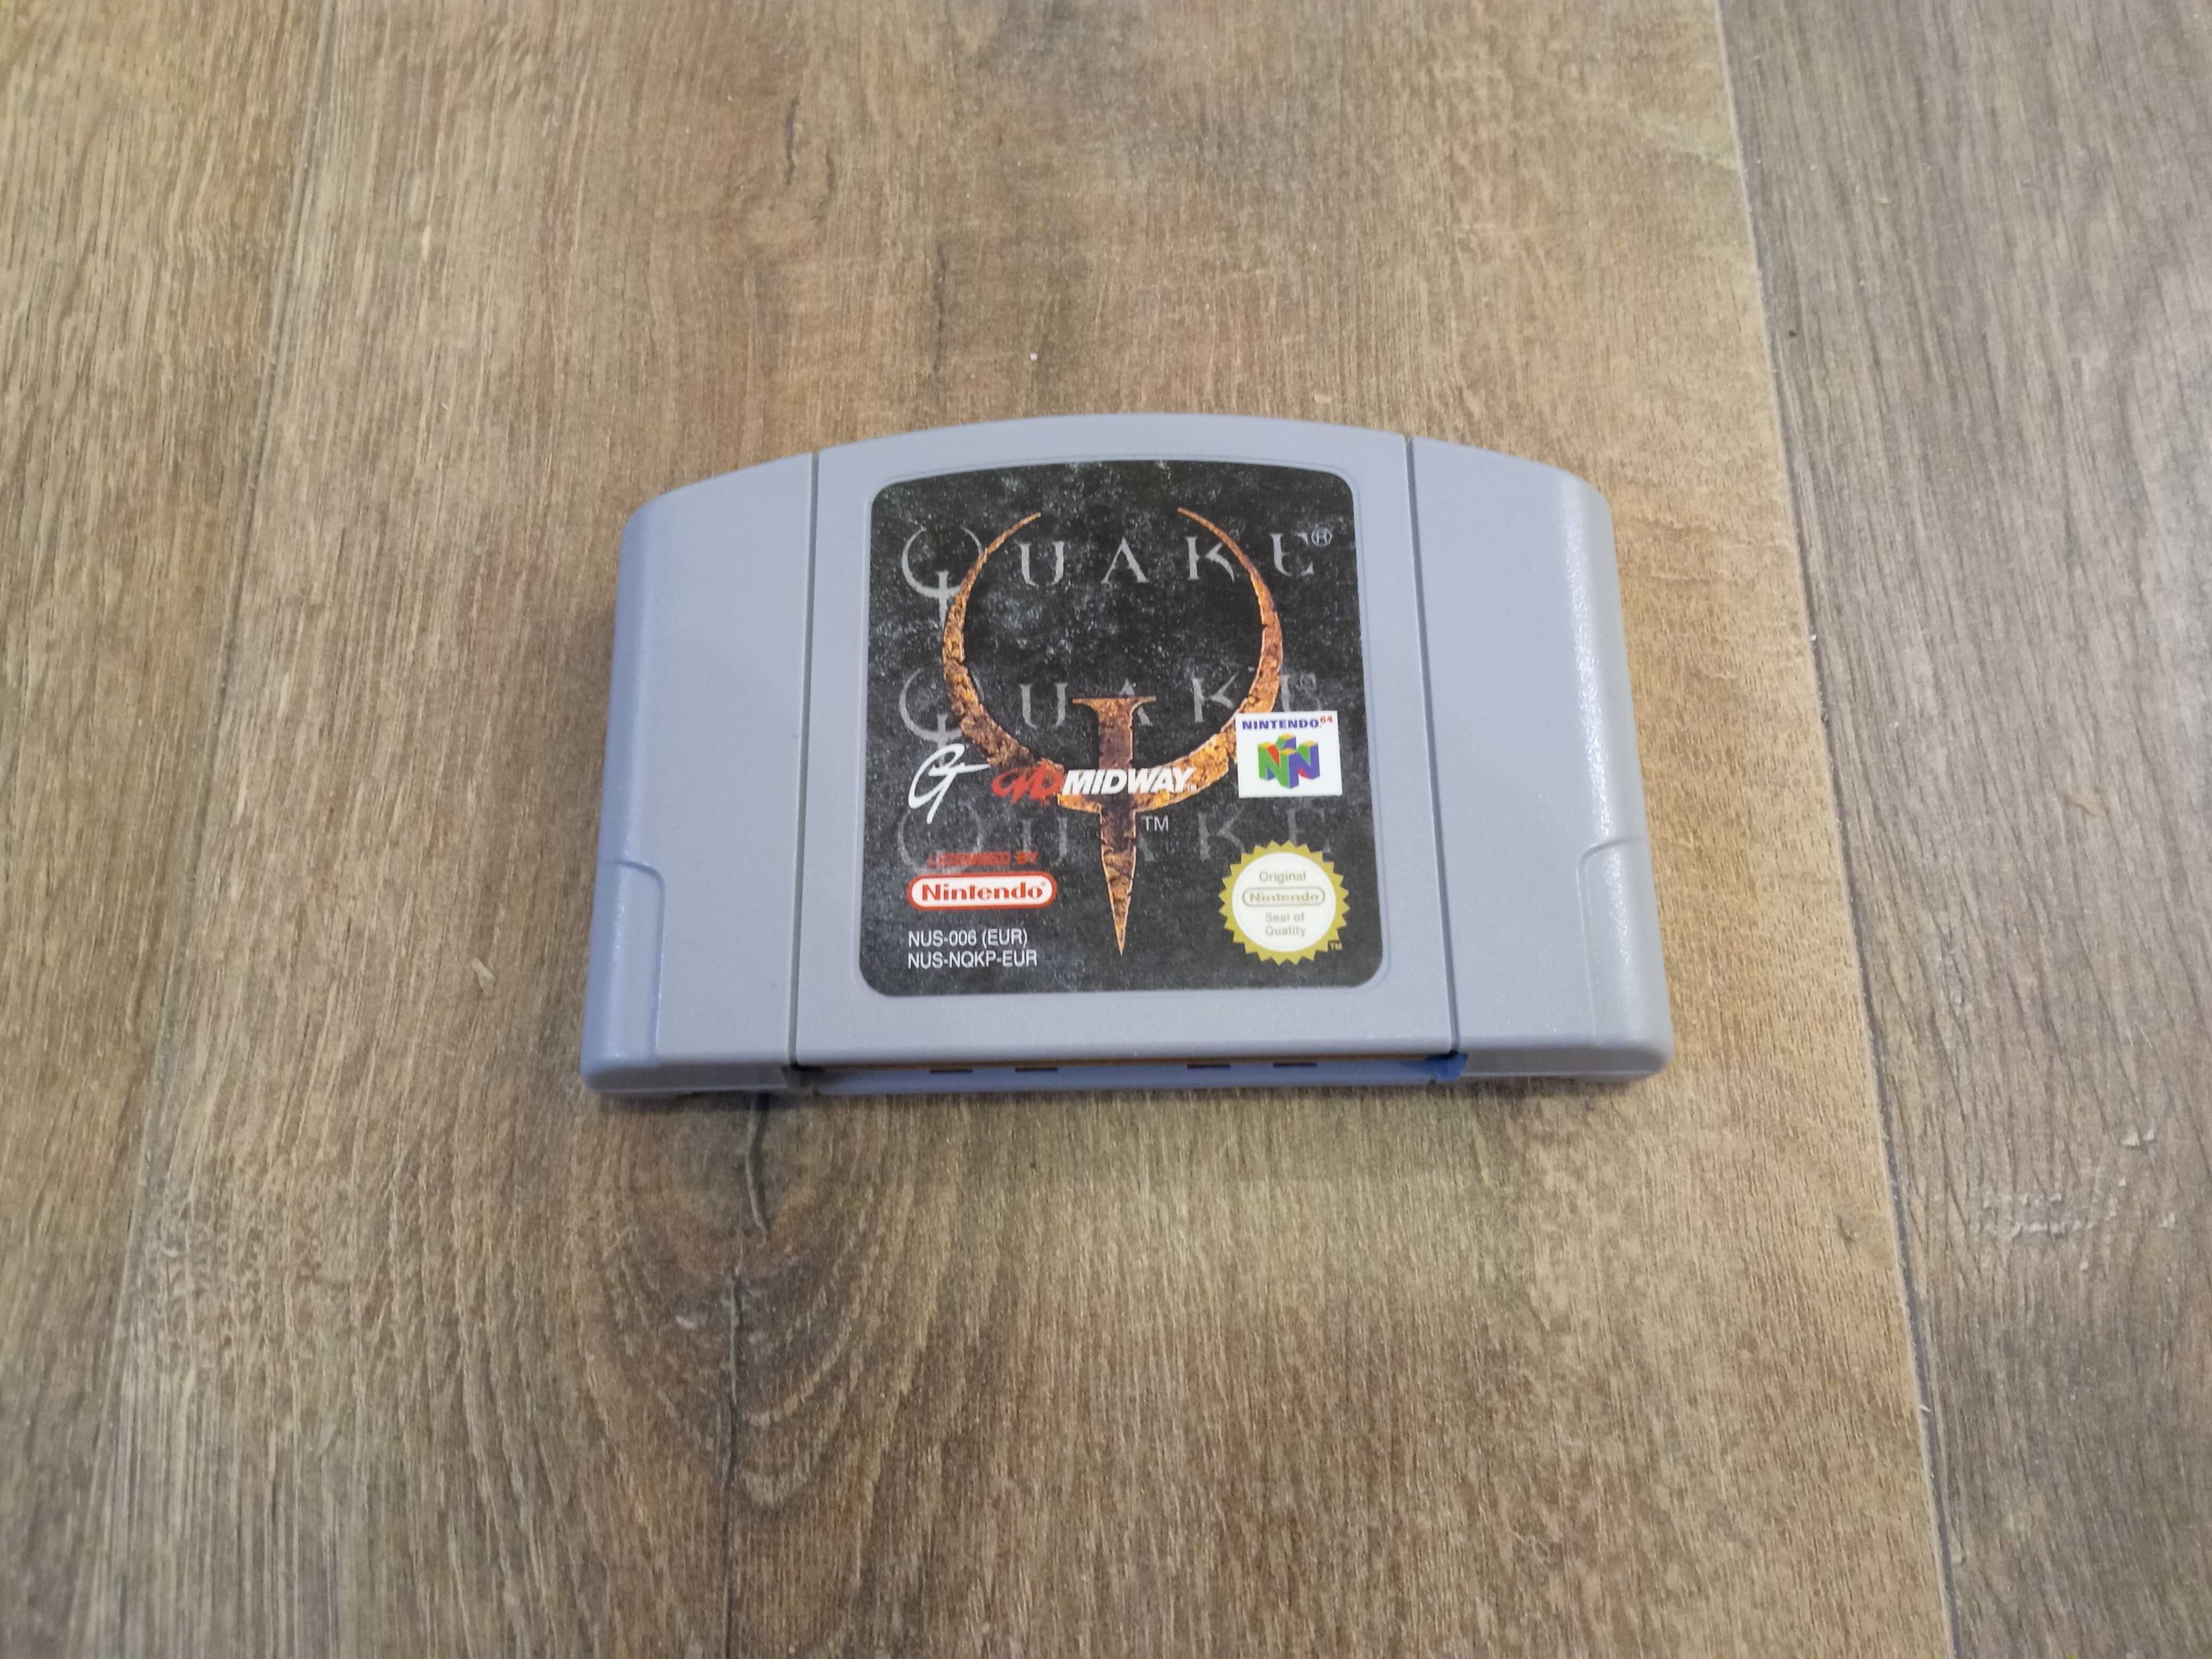 Quake - Nintendo 64